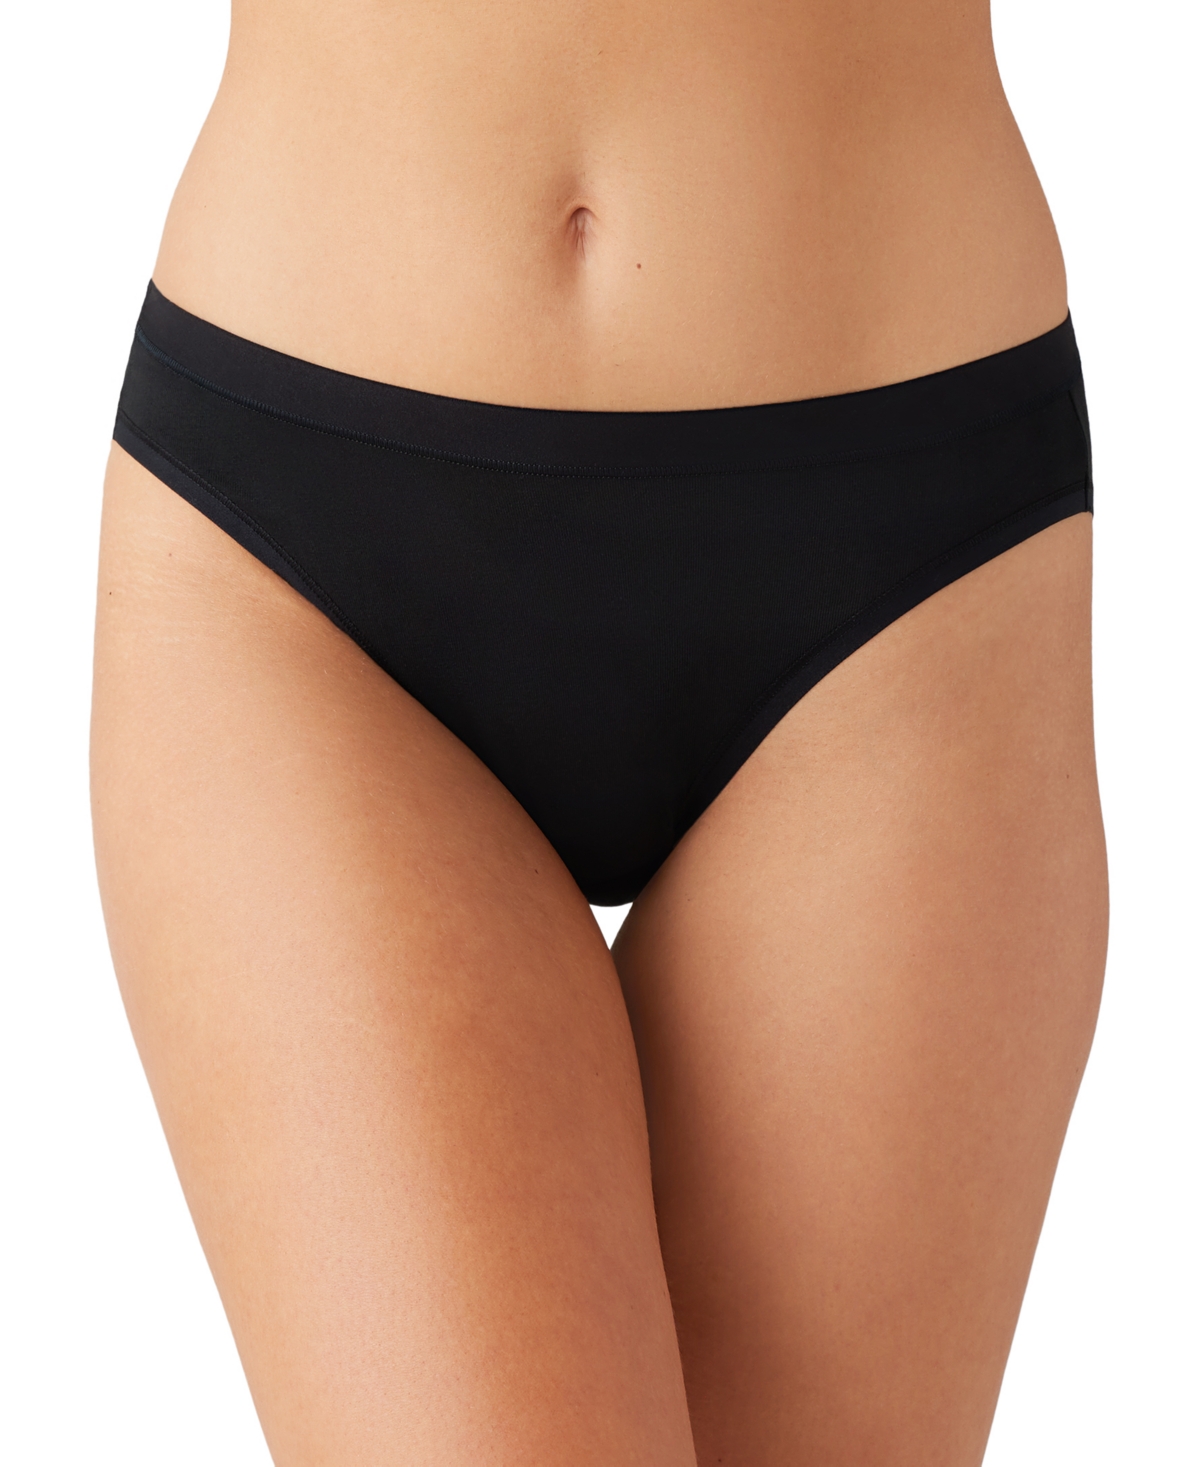 Shop Wacoal Women's Understated Cotton Bikini Underwear 870362 In Black